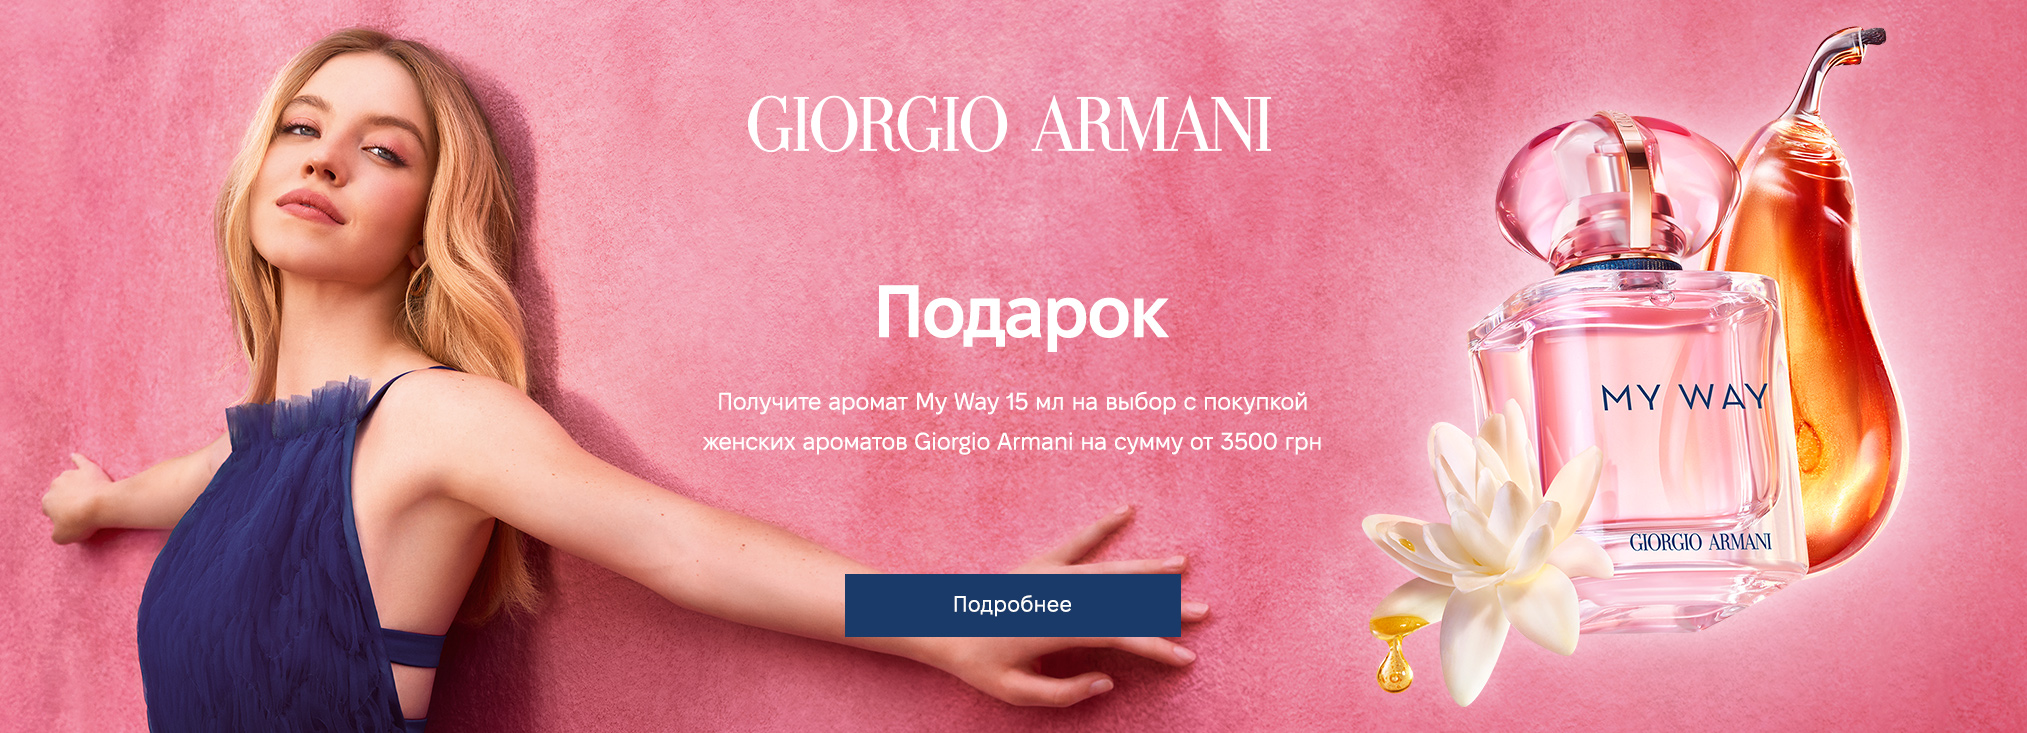 Giorgio Armani women 3